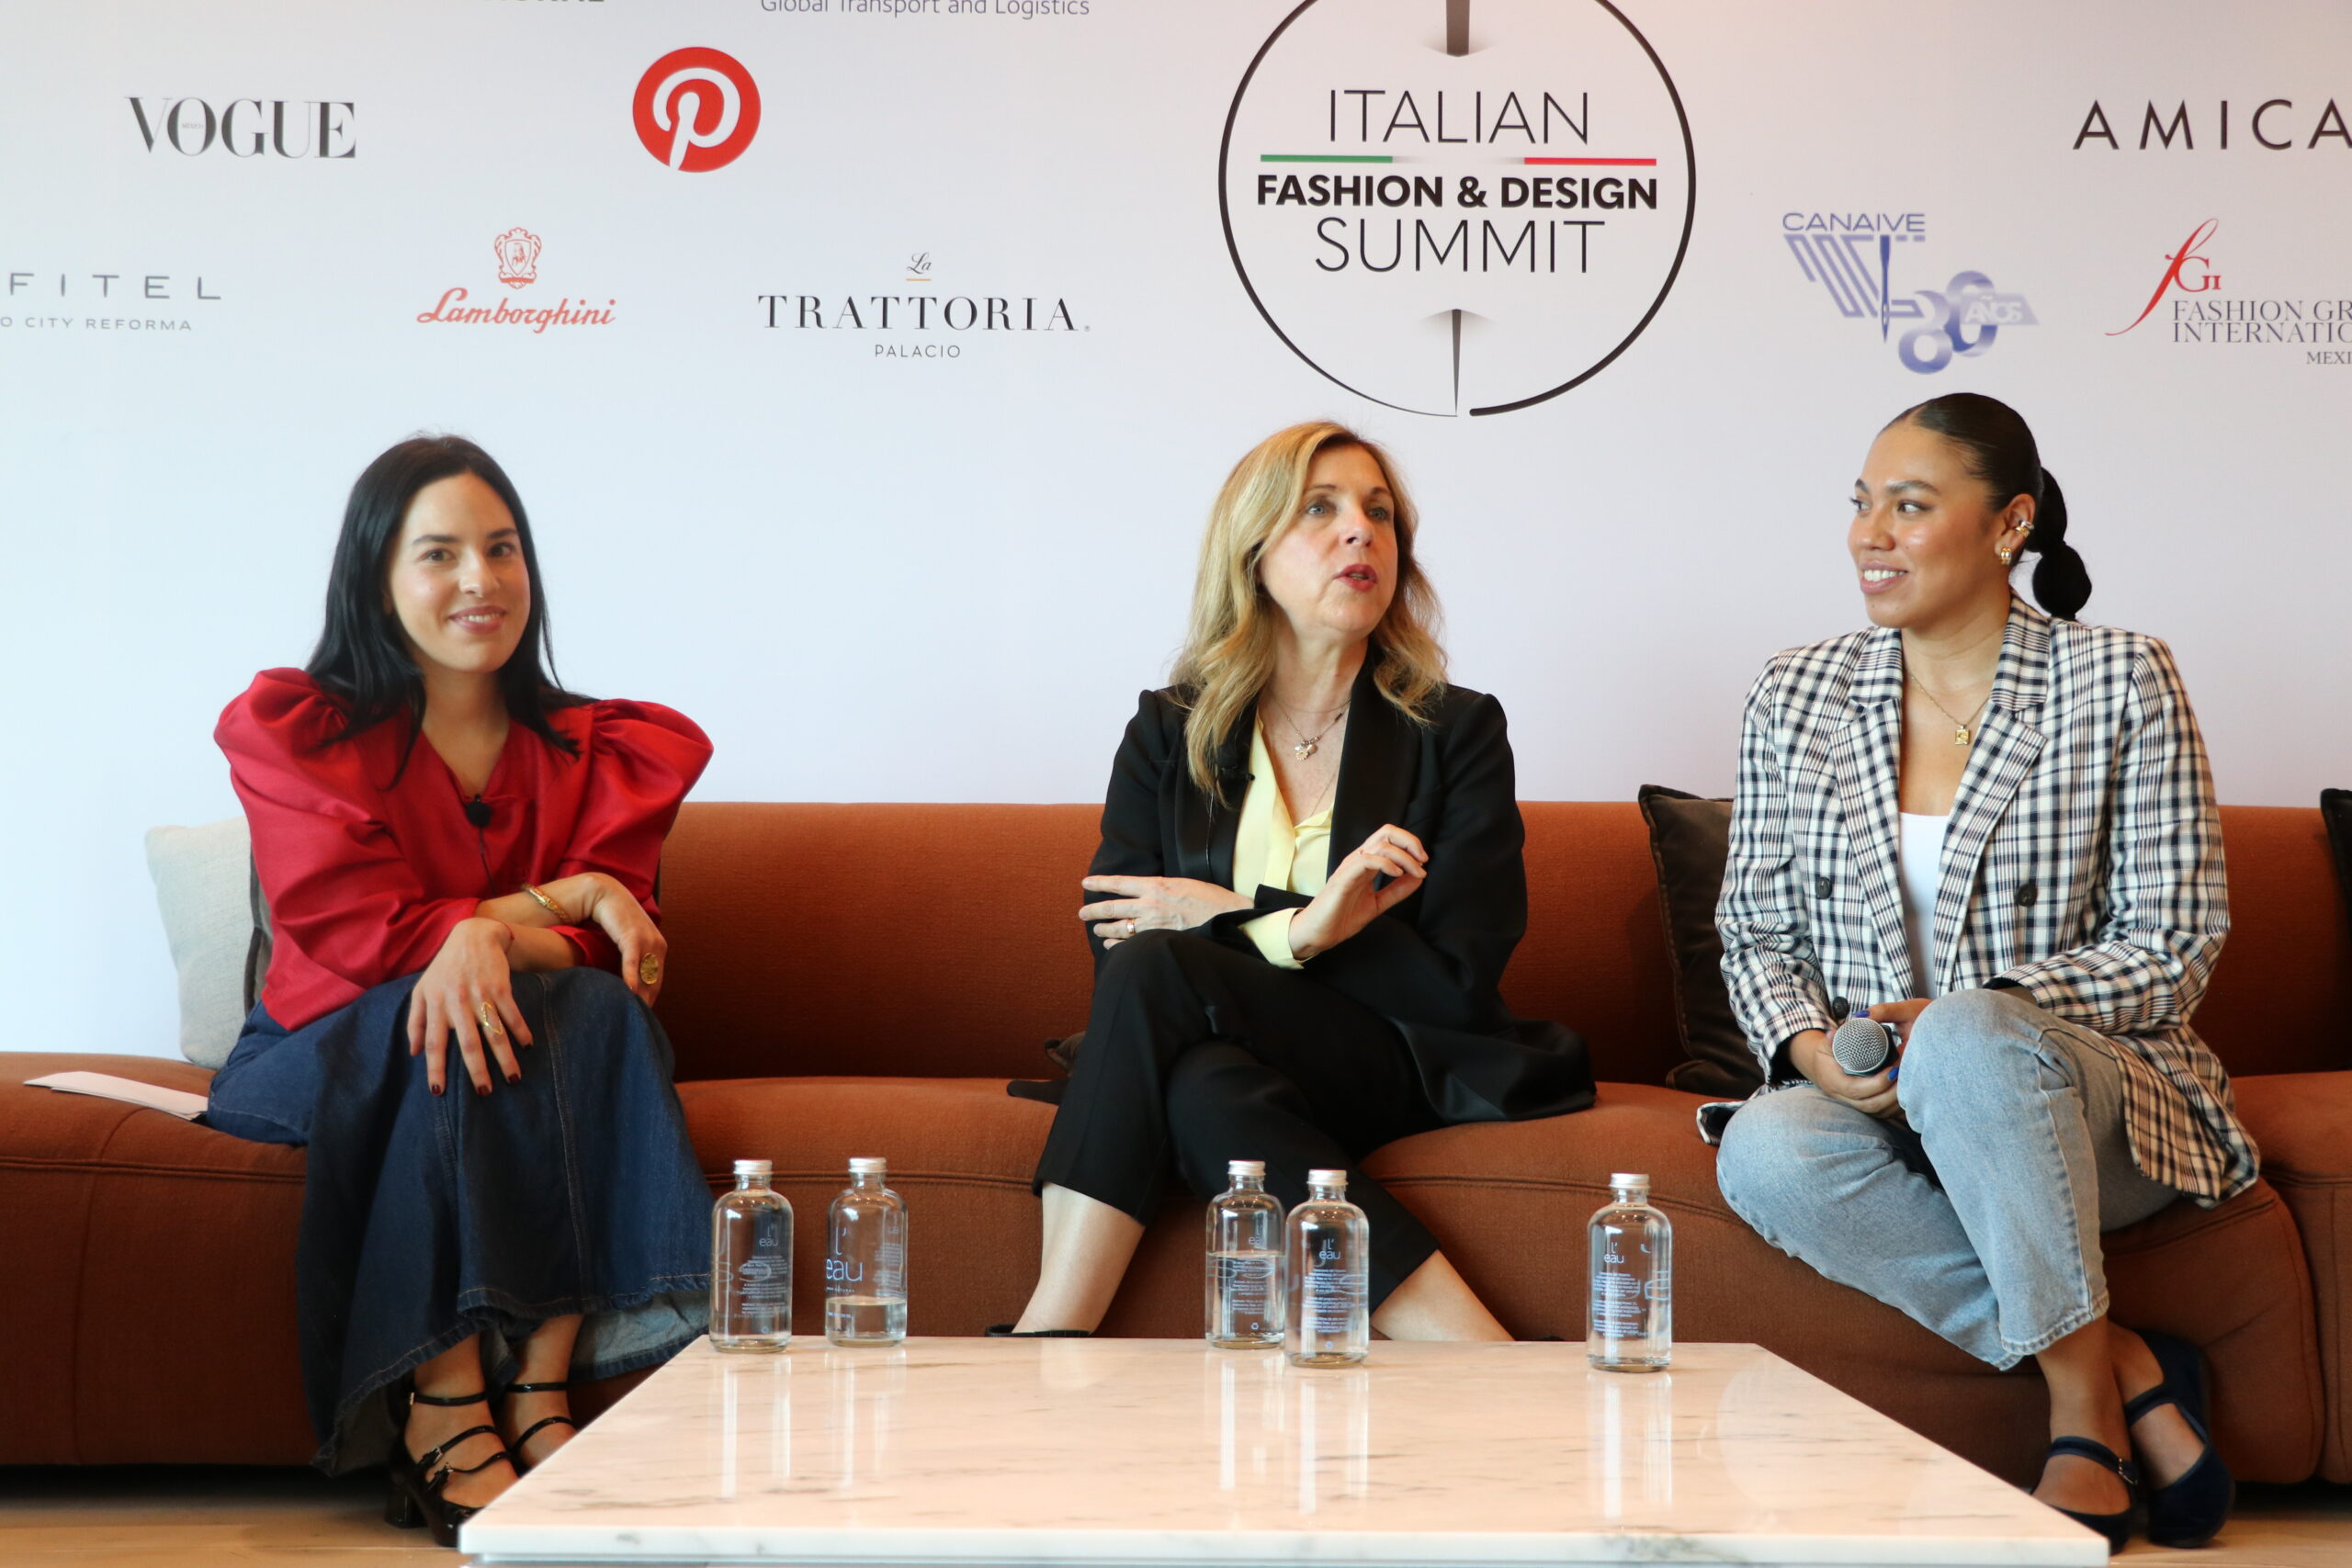 Italian Fashion & Design Summit: Un Encuentro Entre la Elegancia Italiana y la Creatividad Mexicana